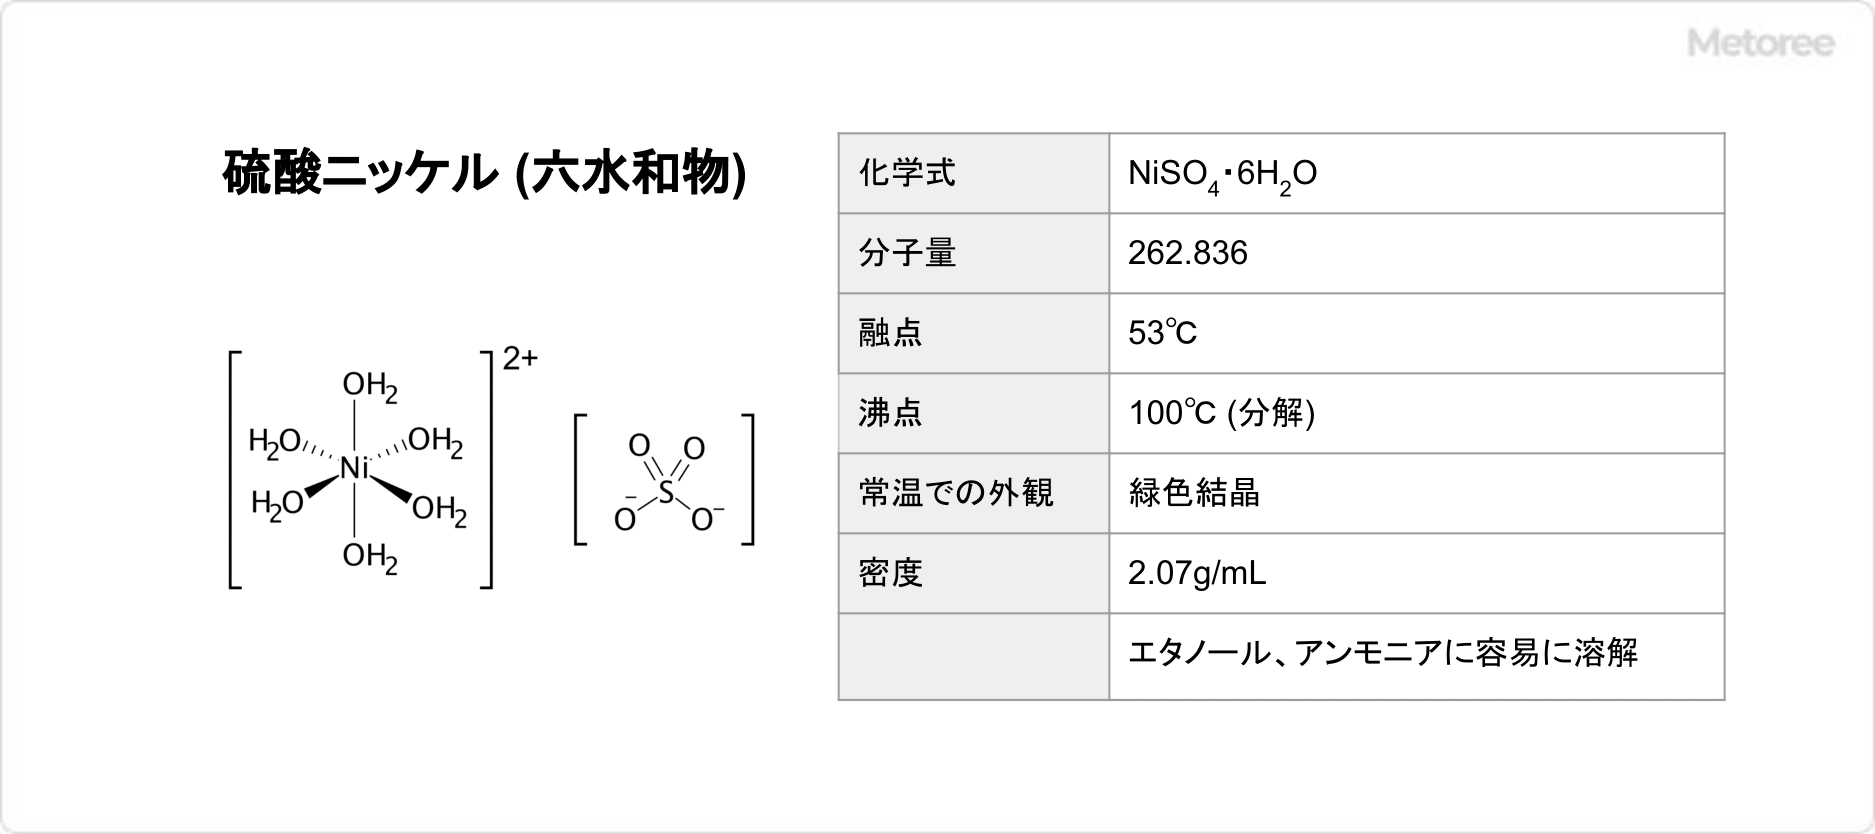 硫酸ニッケル (六水和物) の基本情報